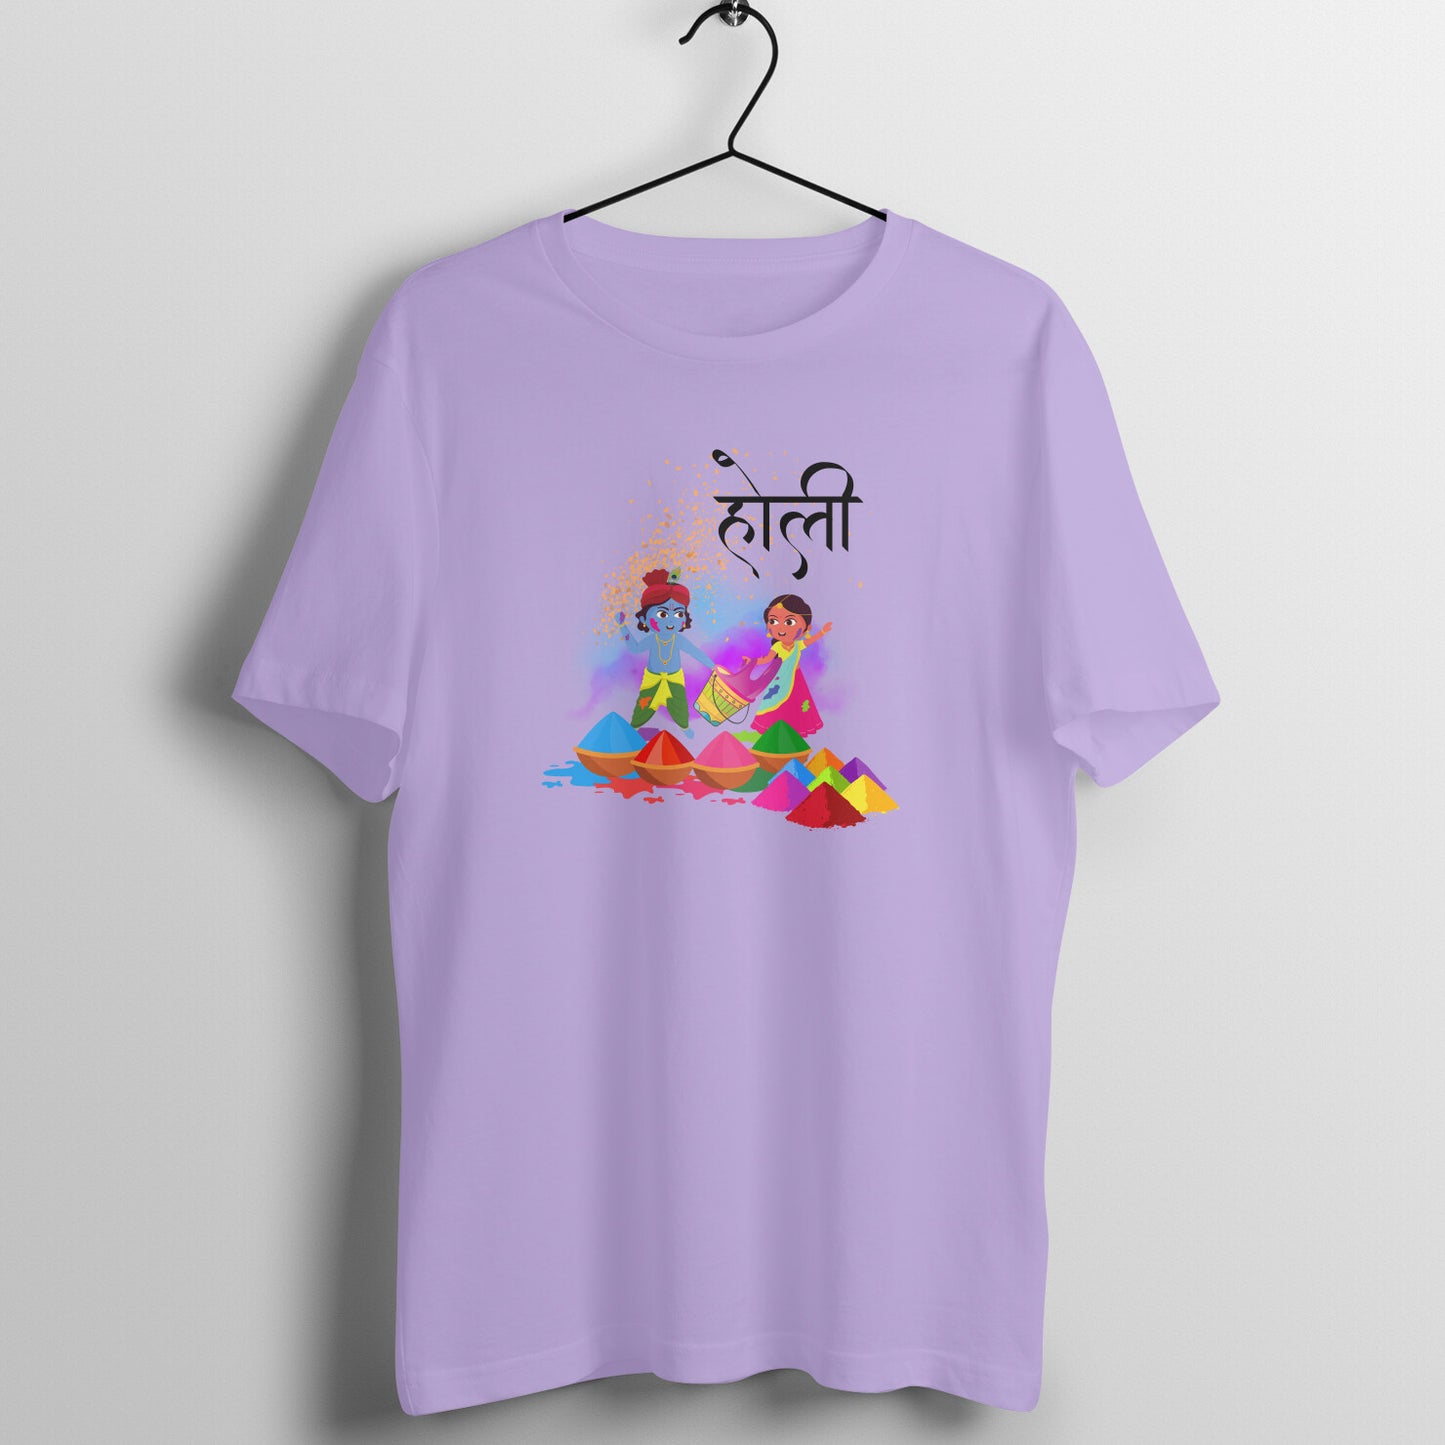 Divine Holi: Men's Round Neck T-Shirt with Radha and Krishna Playing Design